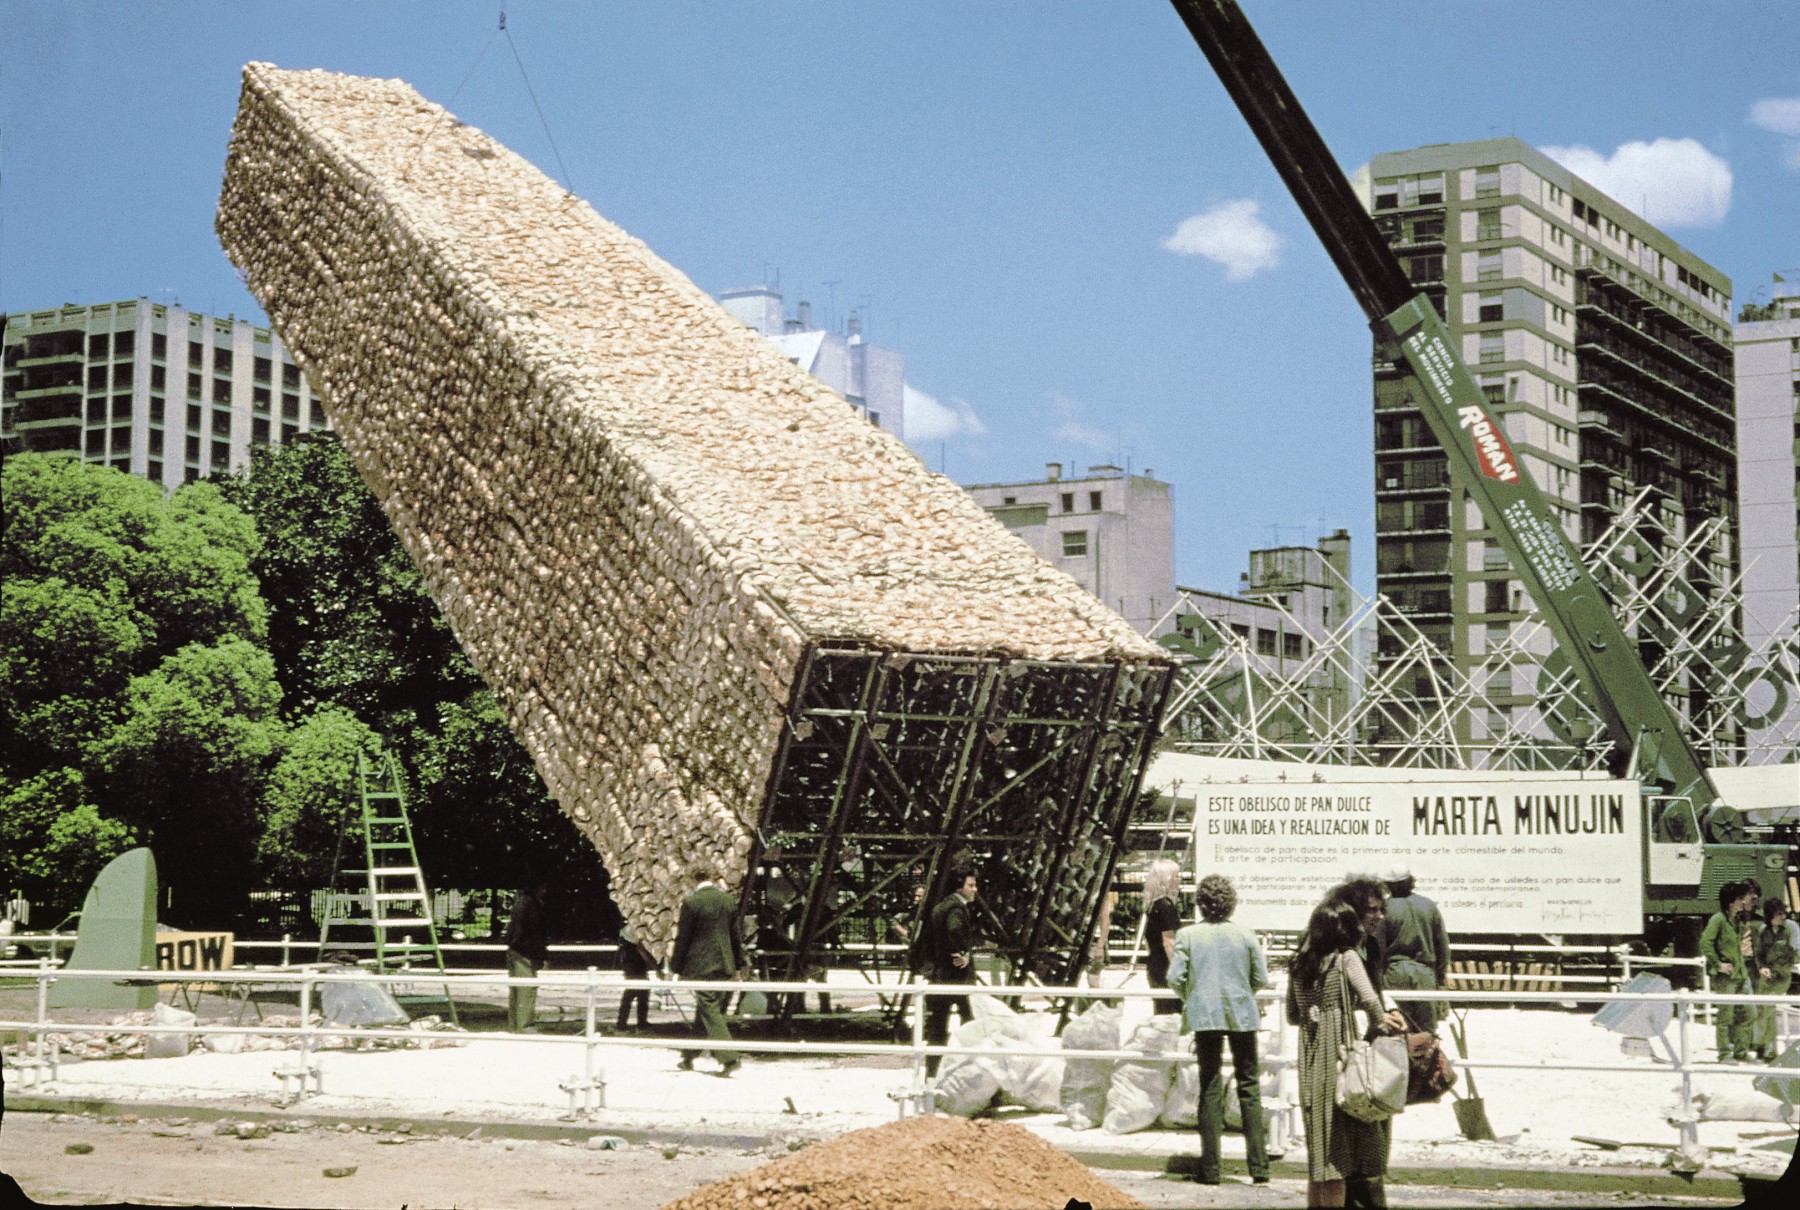 Documentation of El obelisco de pan dulce, Feria de Las Naciones, Buenos Aires, November 1979